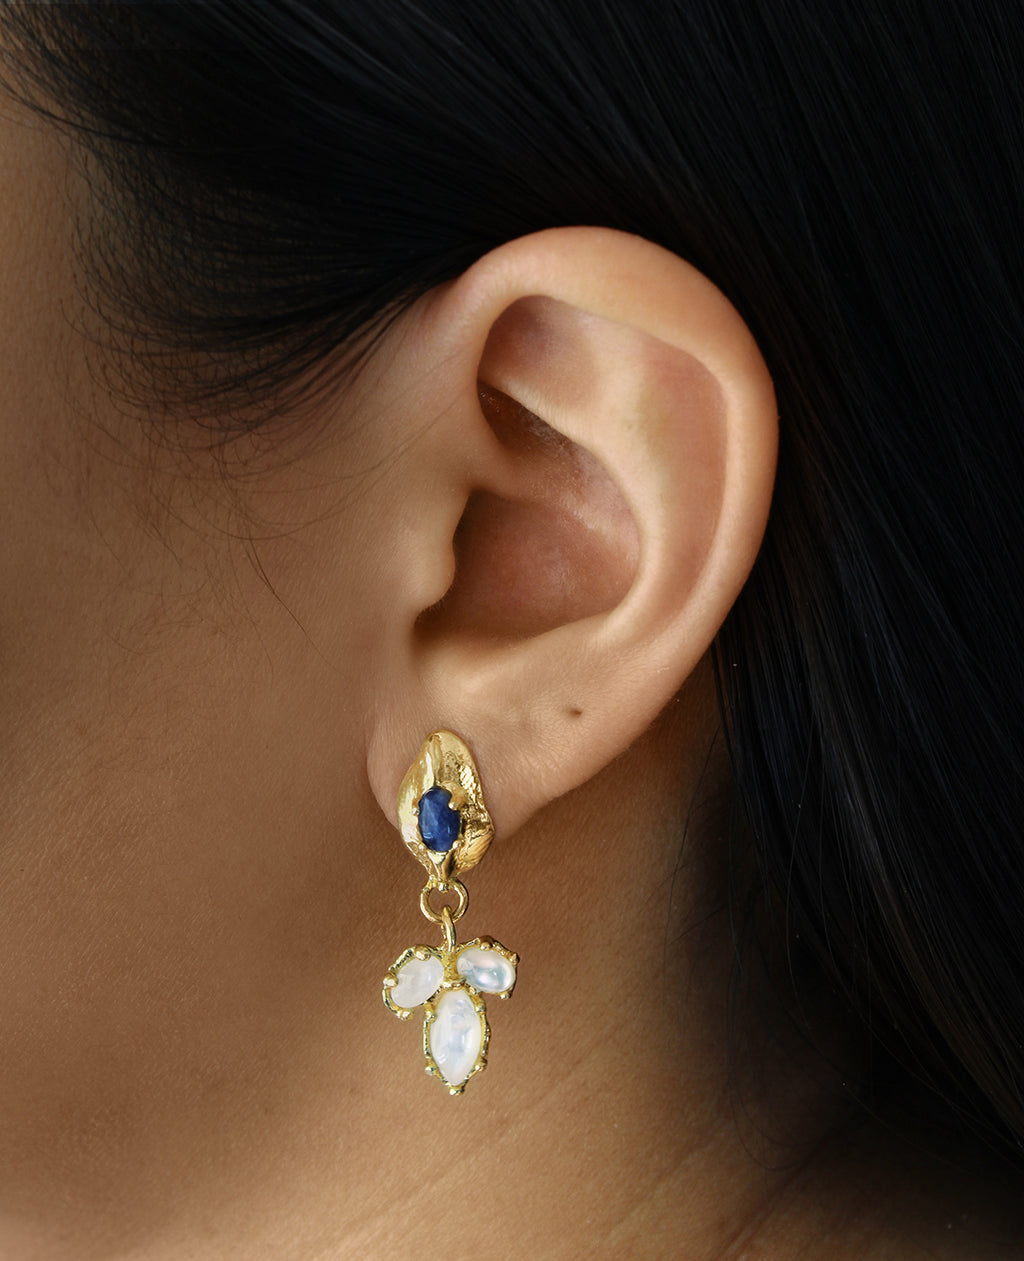 EAT MY BERRIES // boucles d'oreilles d'hiver - ORA-C jewelry - bijoux faits à la main par la designer indépendante montréalaise Caroline Pham